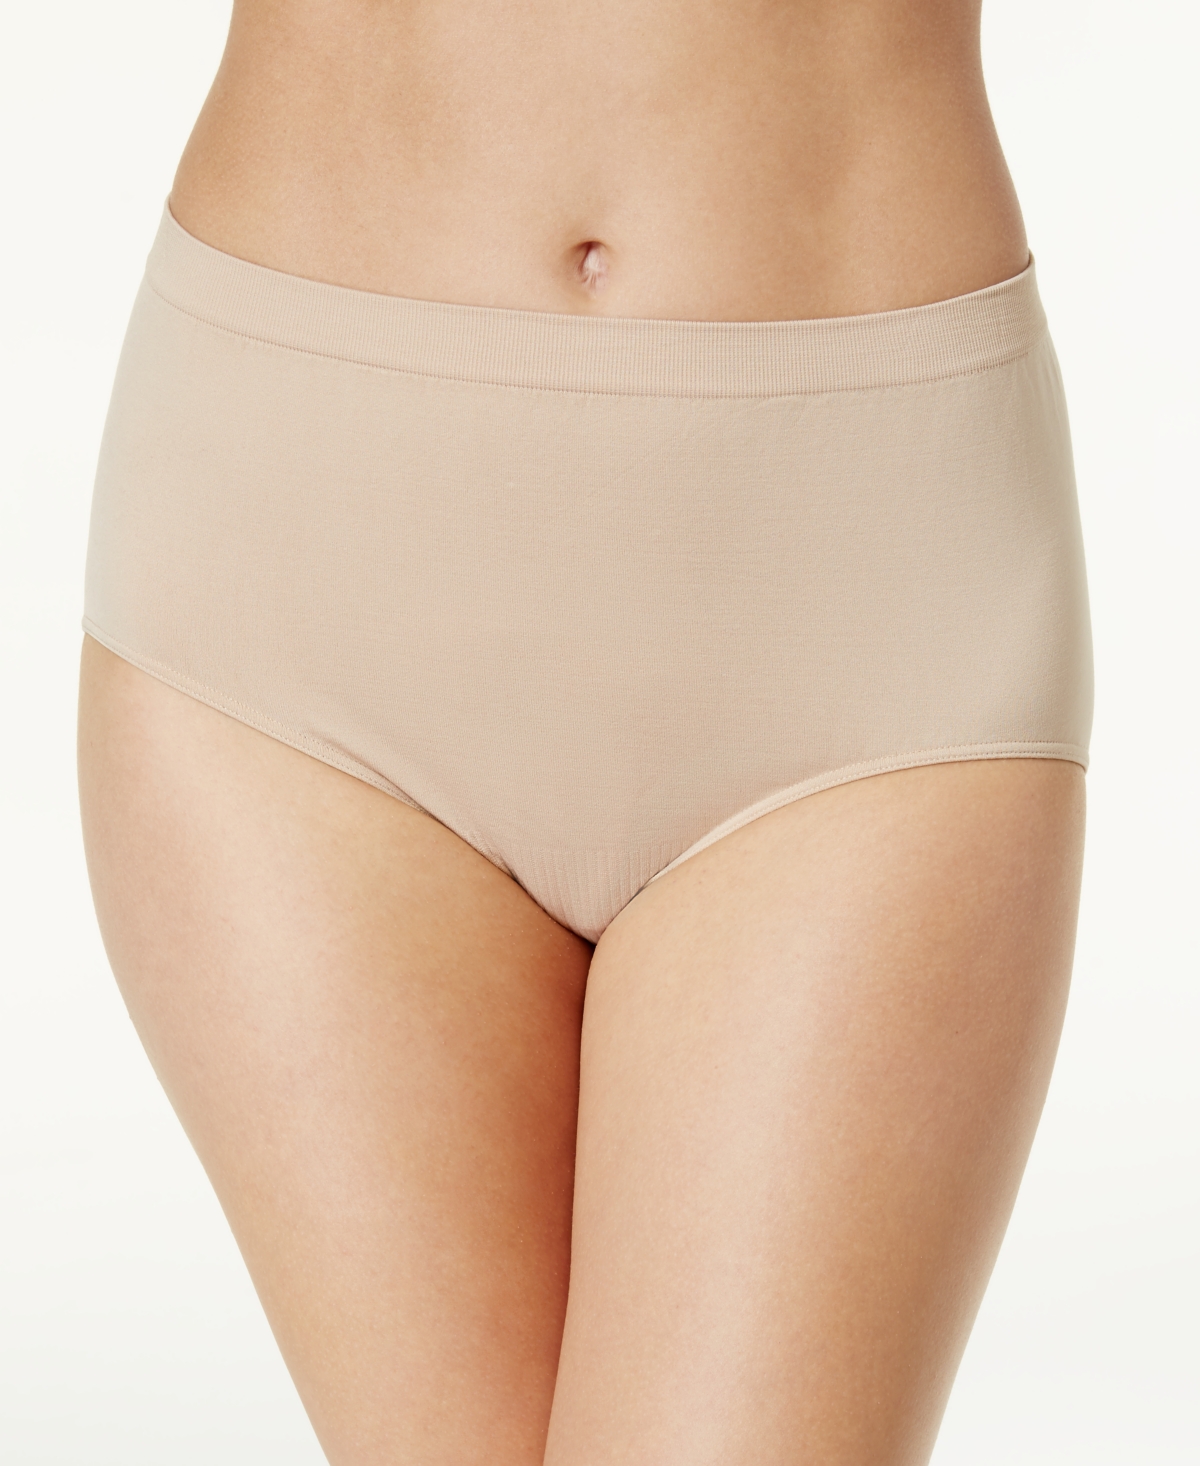 Comfort Revolution Microfiber Brief Underwear 803J - Denim Heather